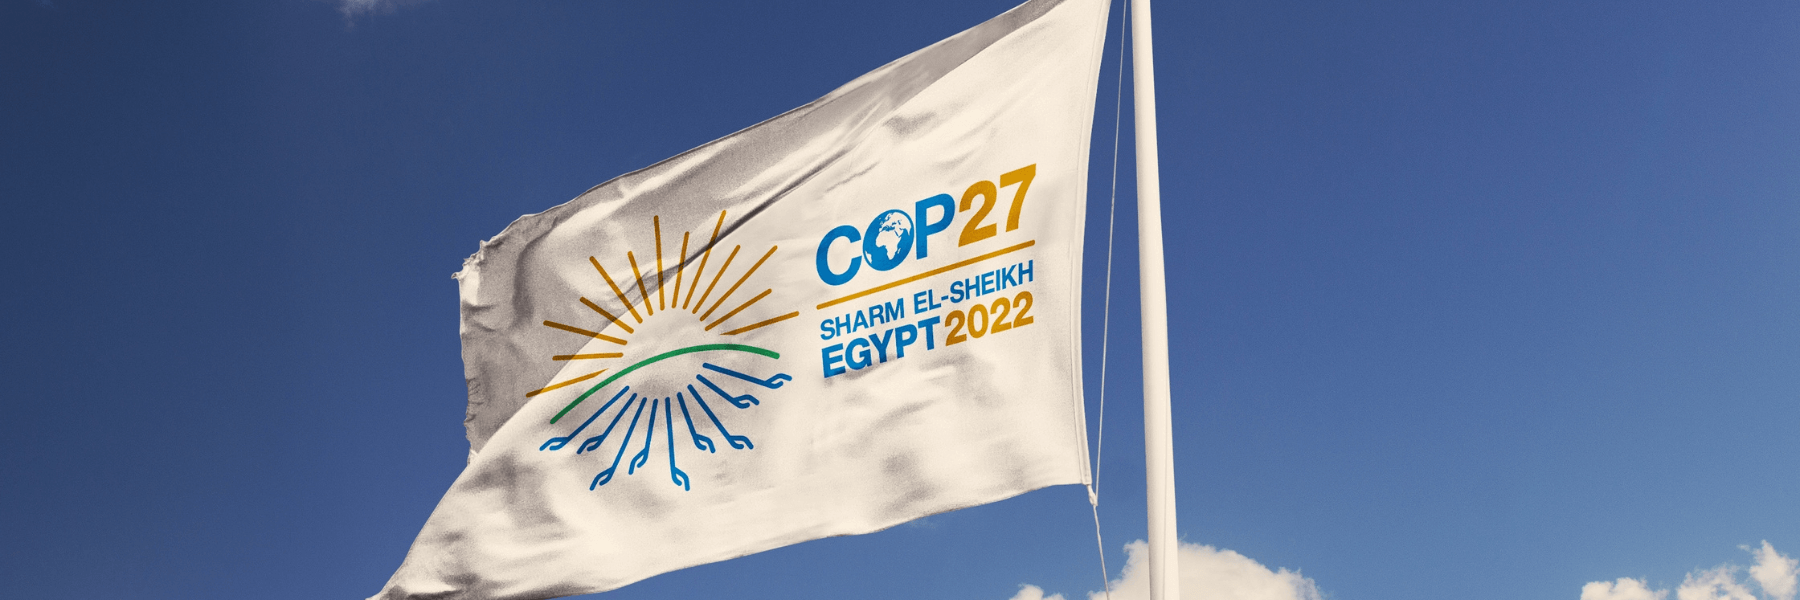 COP27 flag